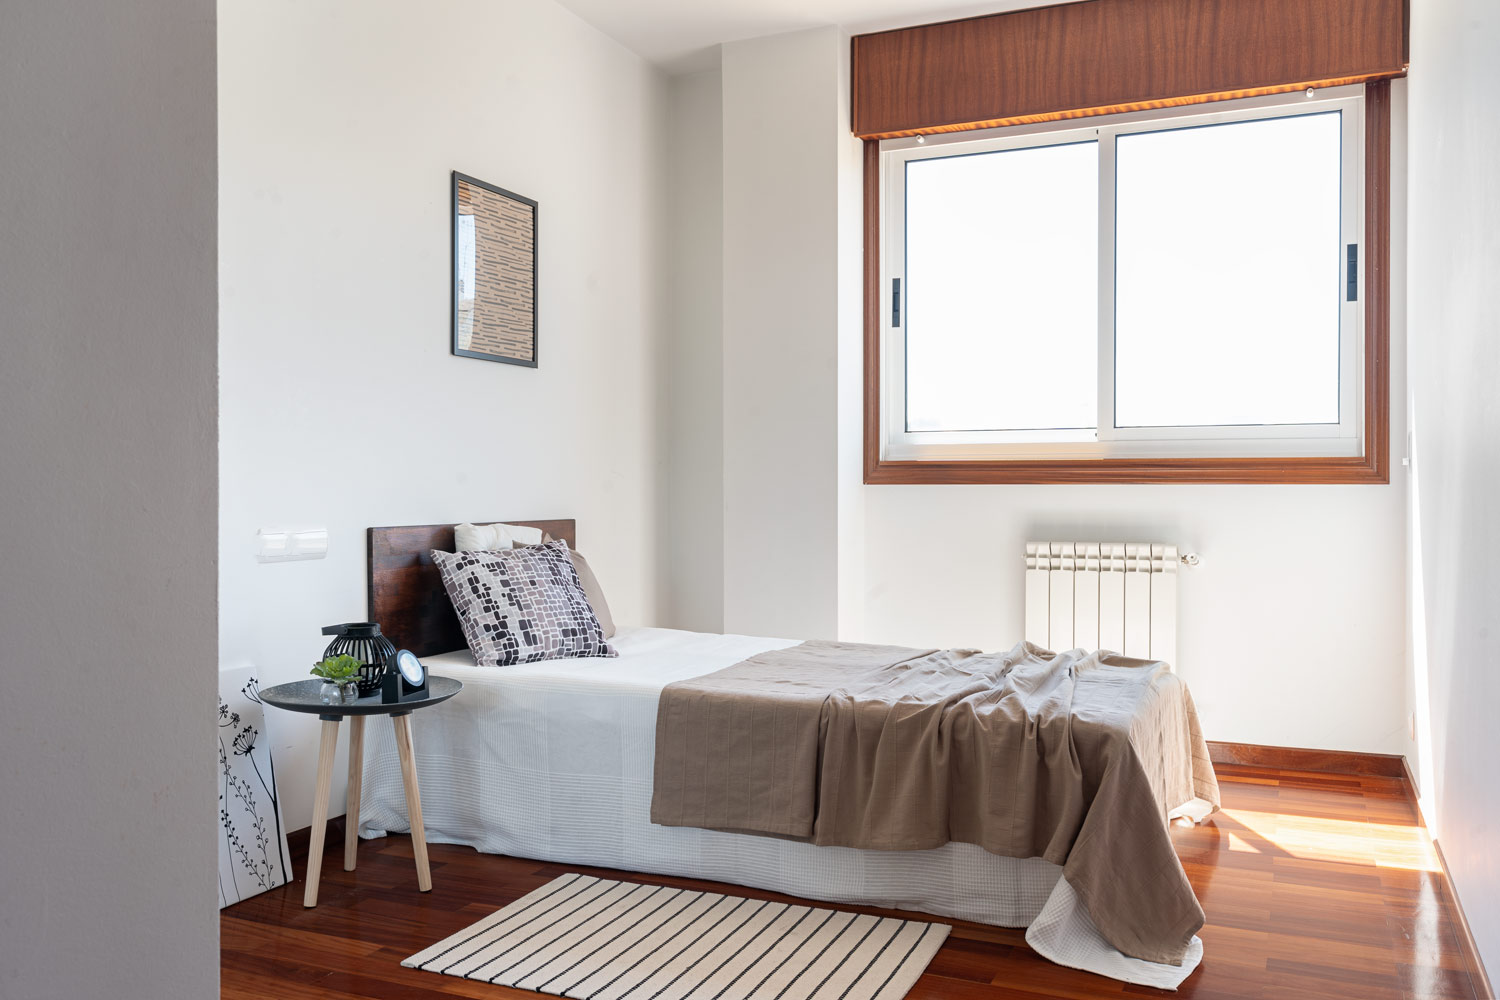 Dormitorio con cama de cartón y mesita de madera